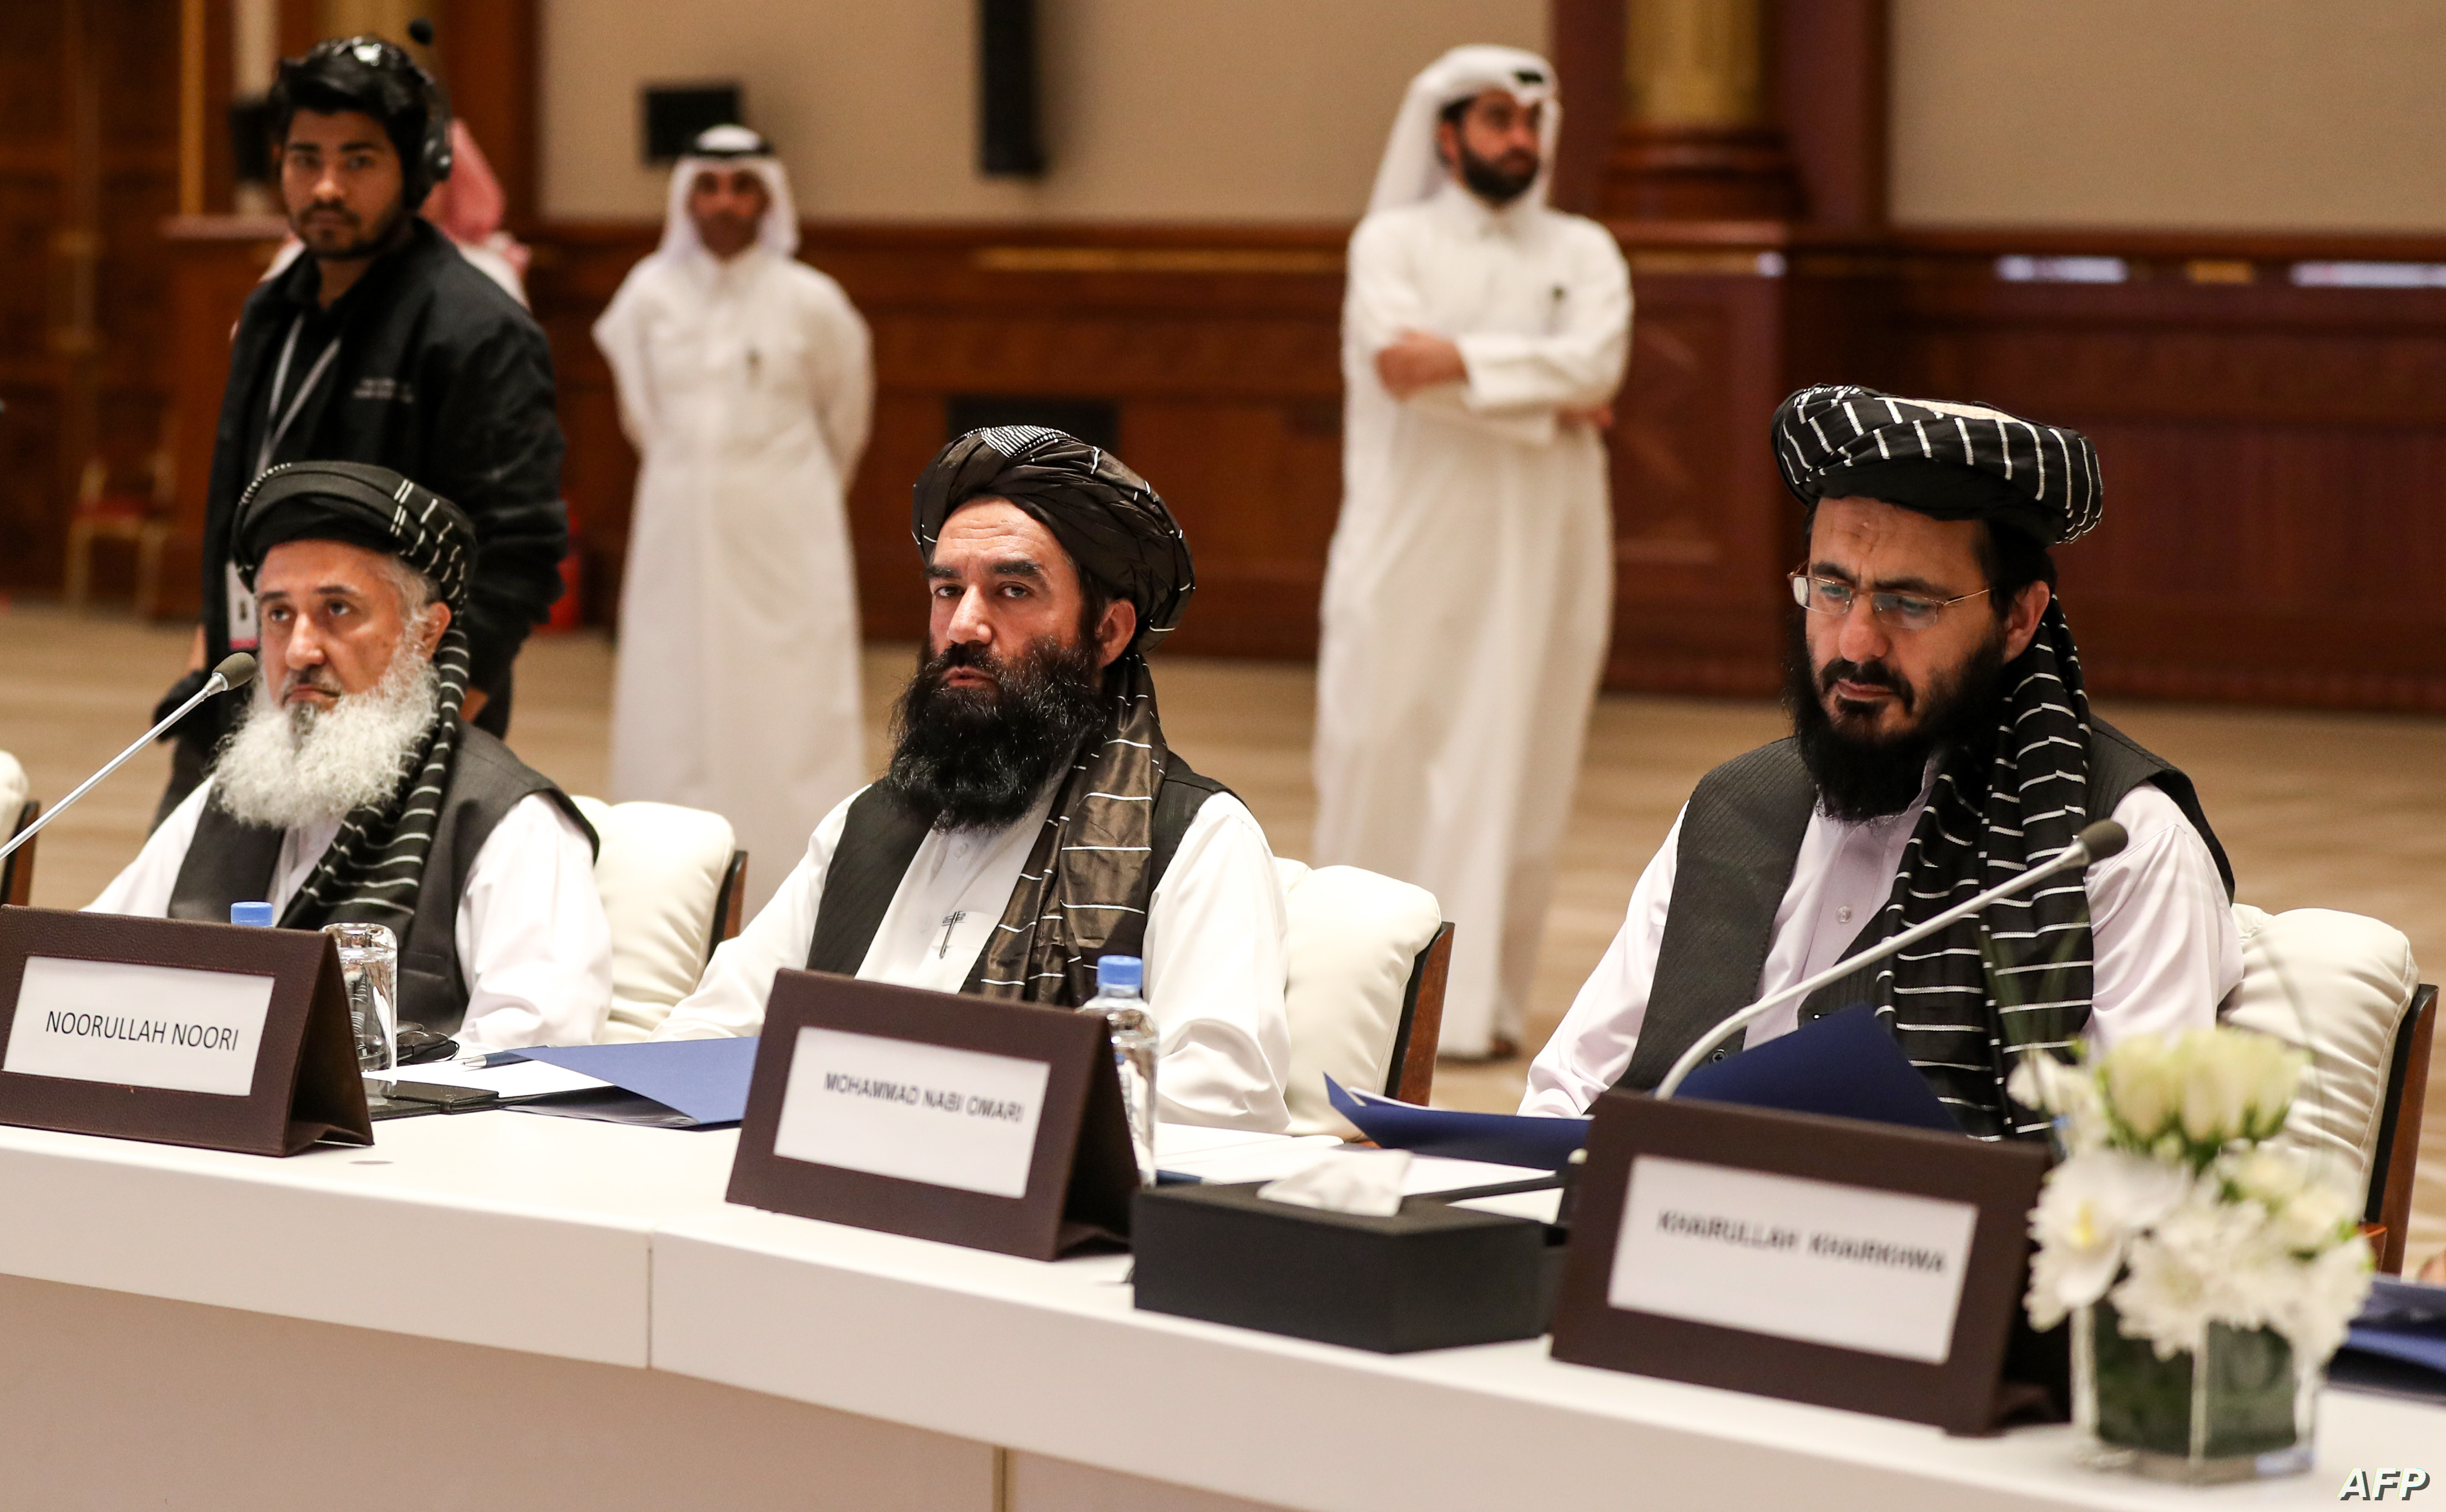 قطر، واسطۀ درجه اول طالبان با جهان غرب